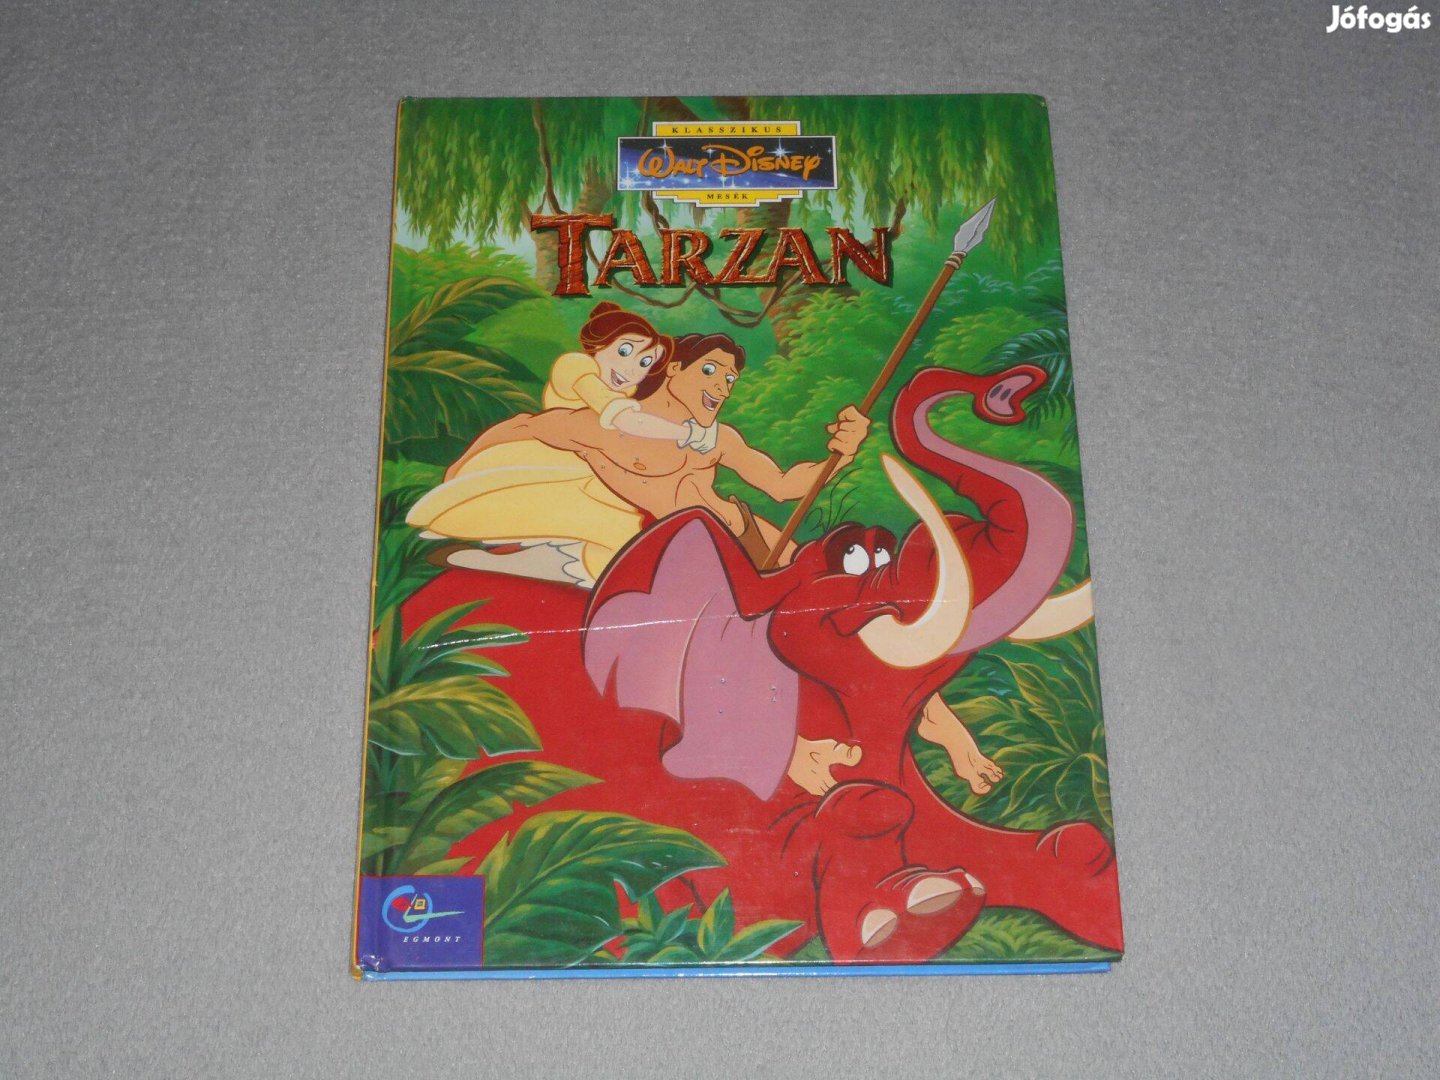 Tarzan - Disney klasszikus mesék sorozat 27. (Egmont kiadó, 1999)